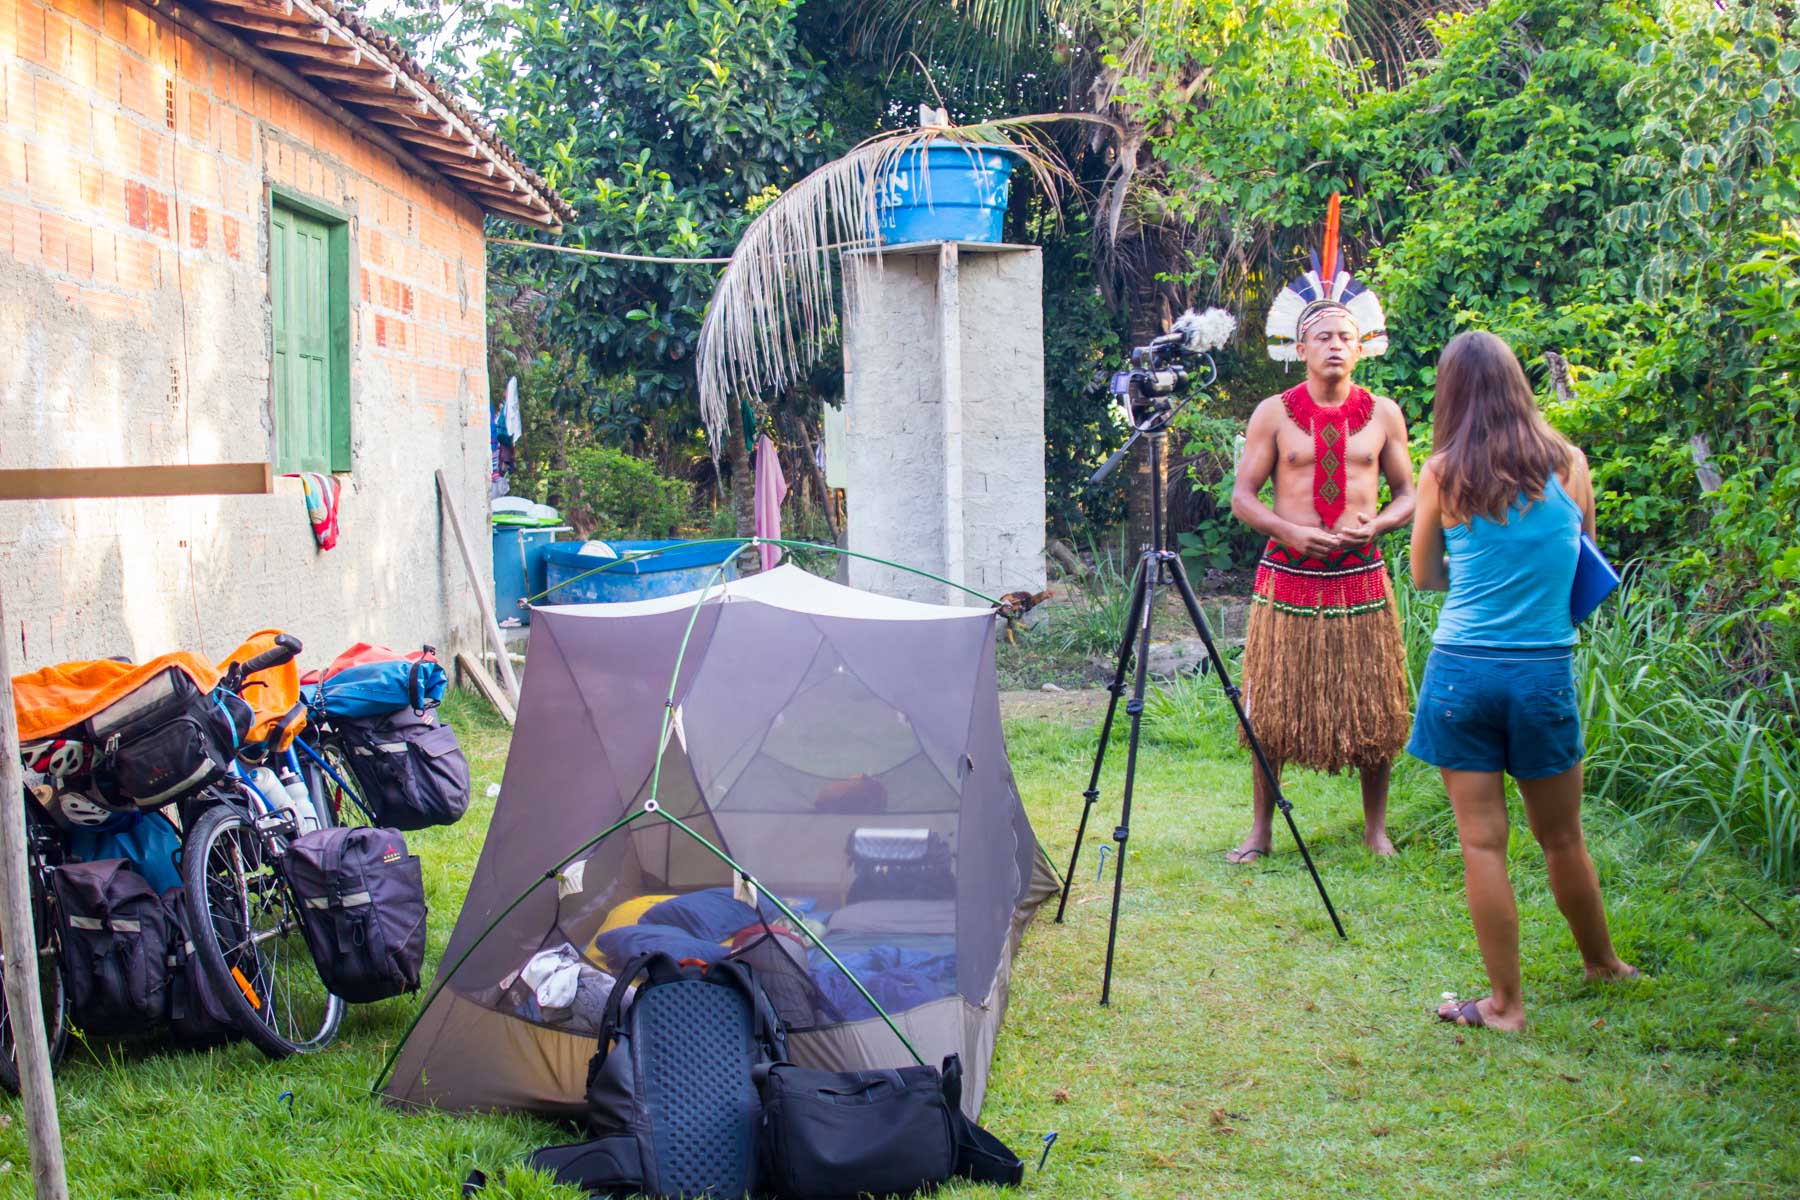 Un homme autochtone en habit traditionnel donne une entrevue filmée avec une femme de dos près d’une petite tente et d’une maison en brique.